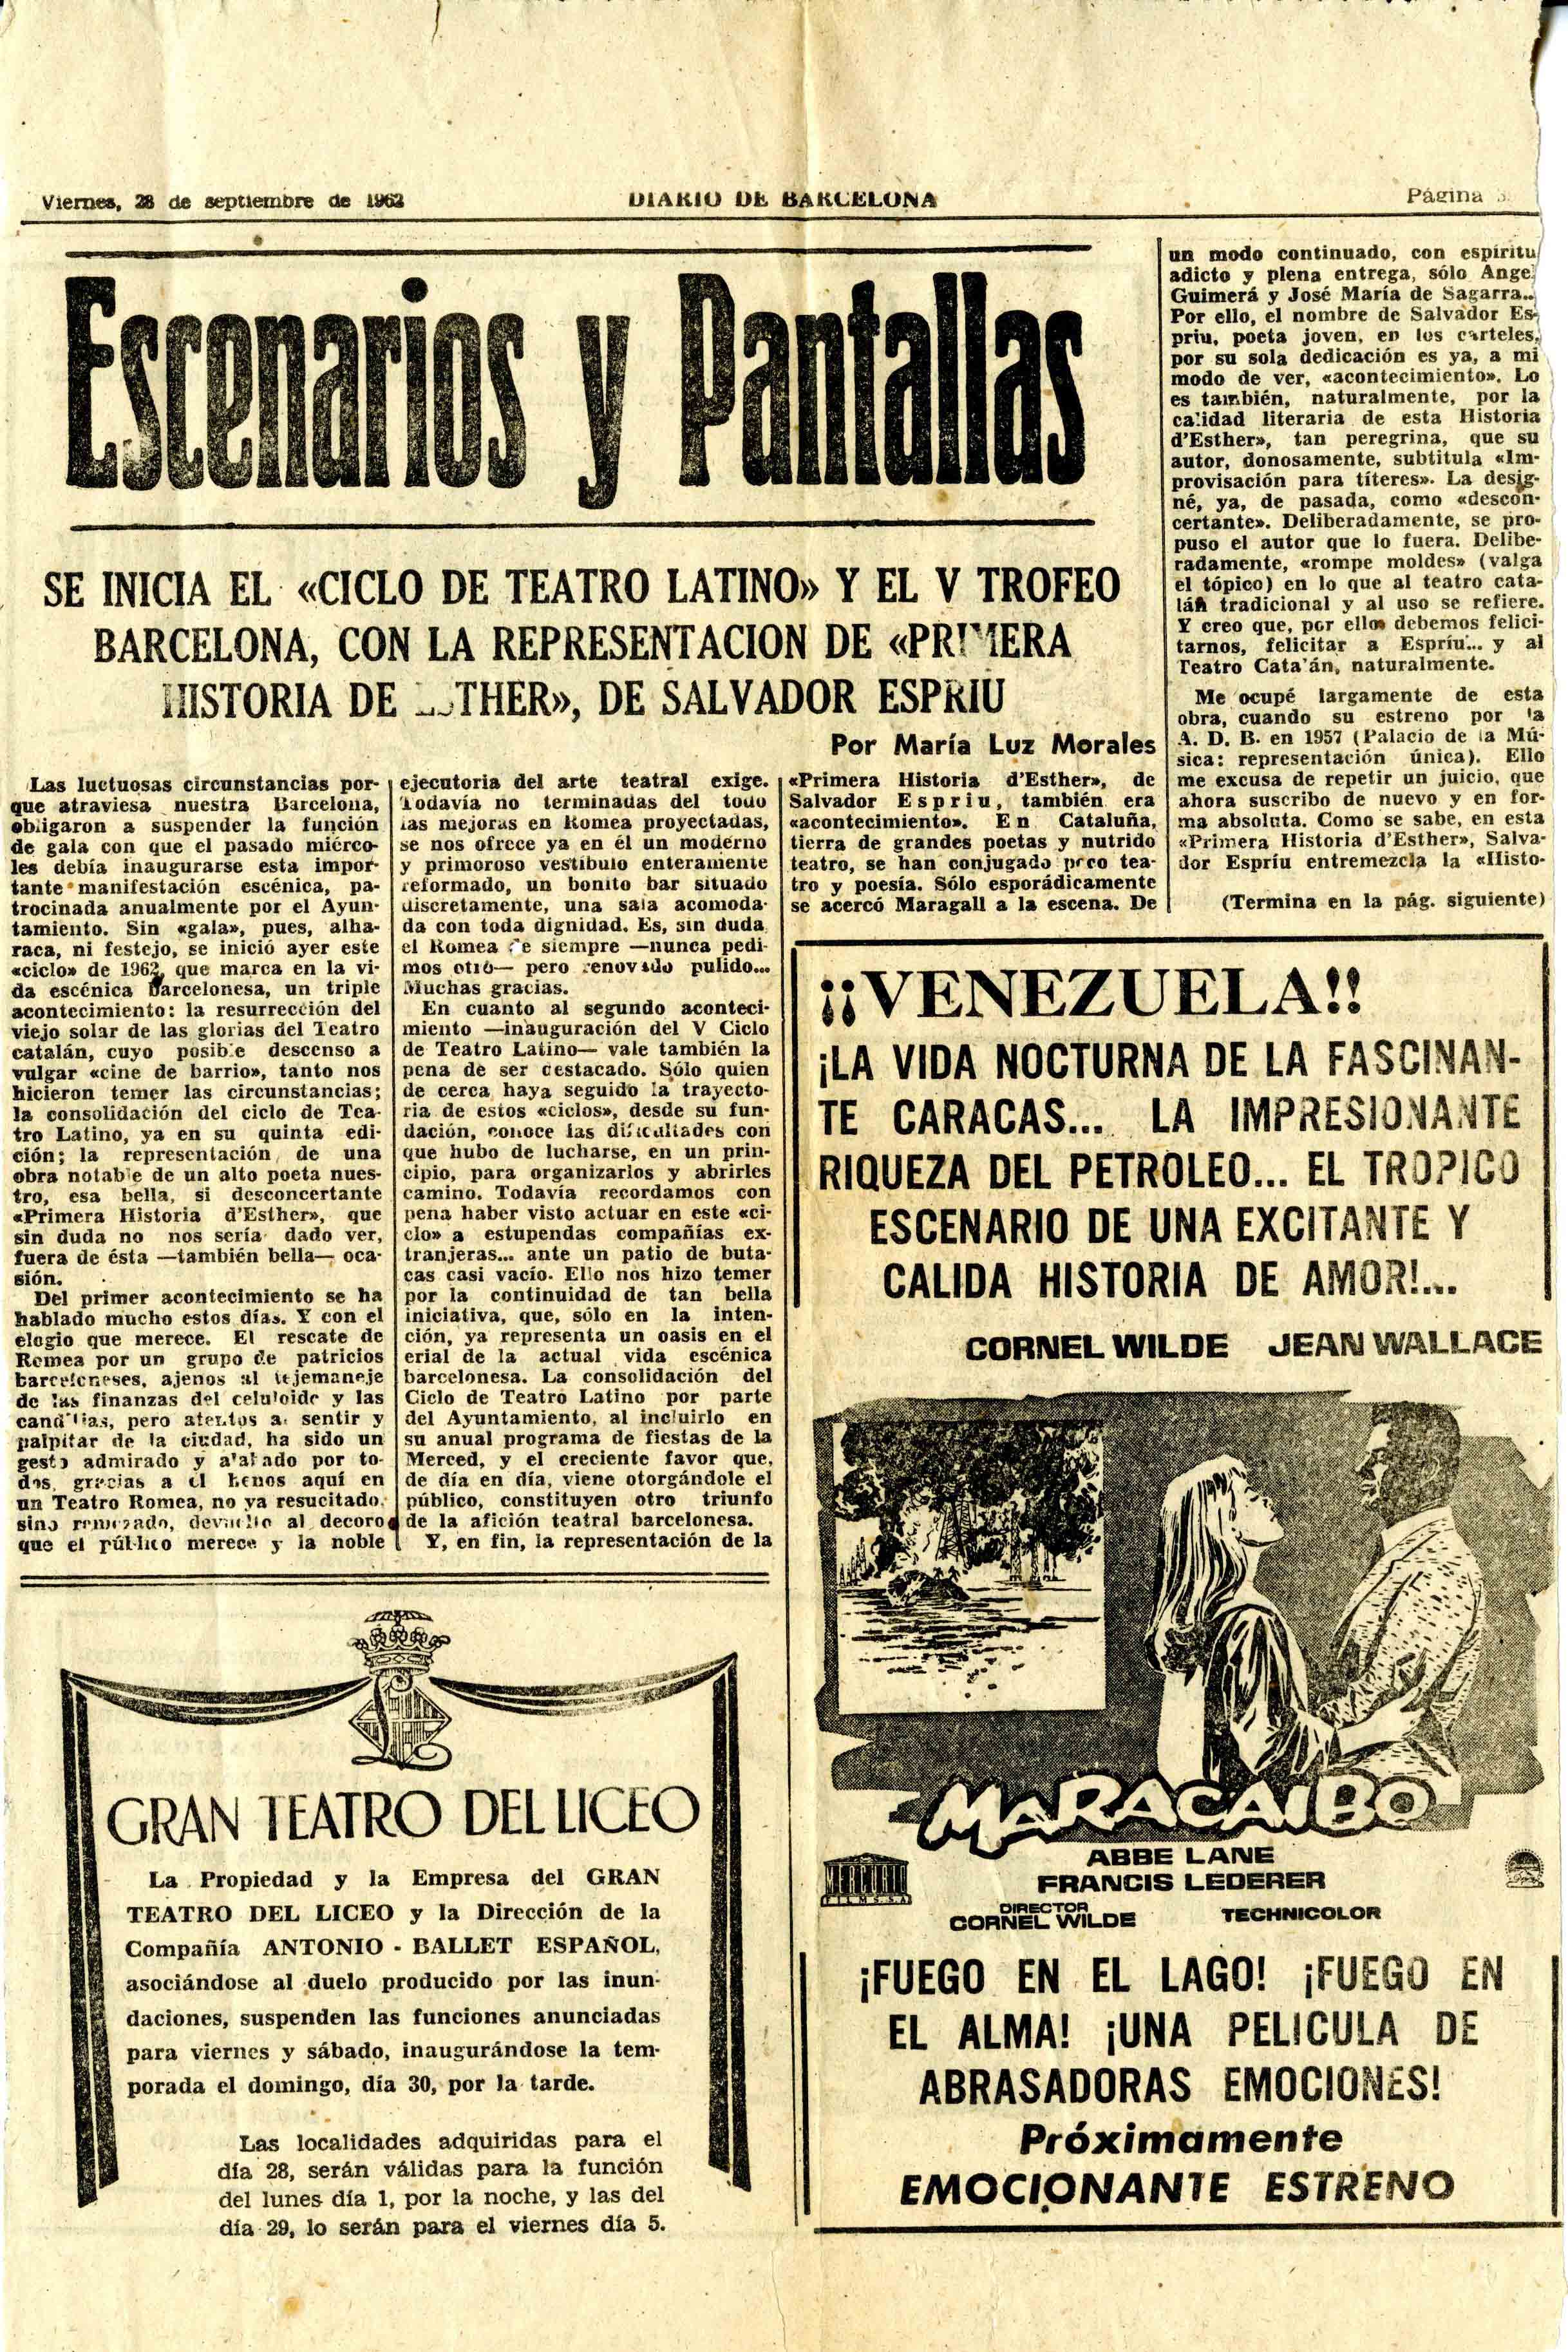 Crítica. Maria Luz Morales. Primera història d'Esther. Diari de Barcelona. 28/09/1962